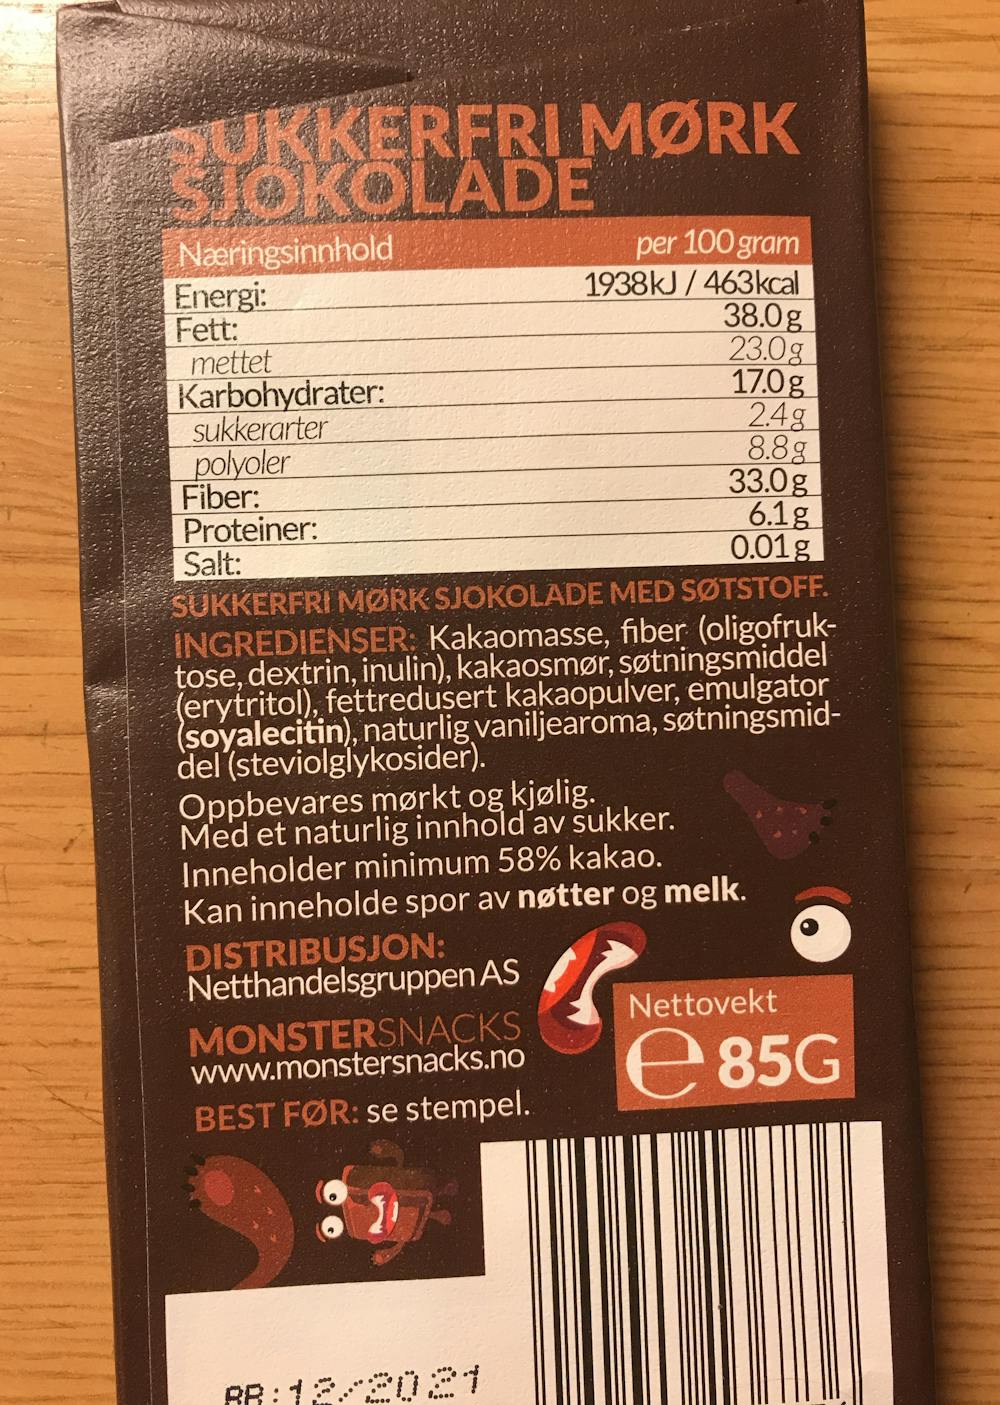 Ingrediensliste - Sukkerfri sjokolade, Monster